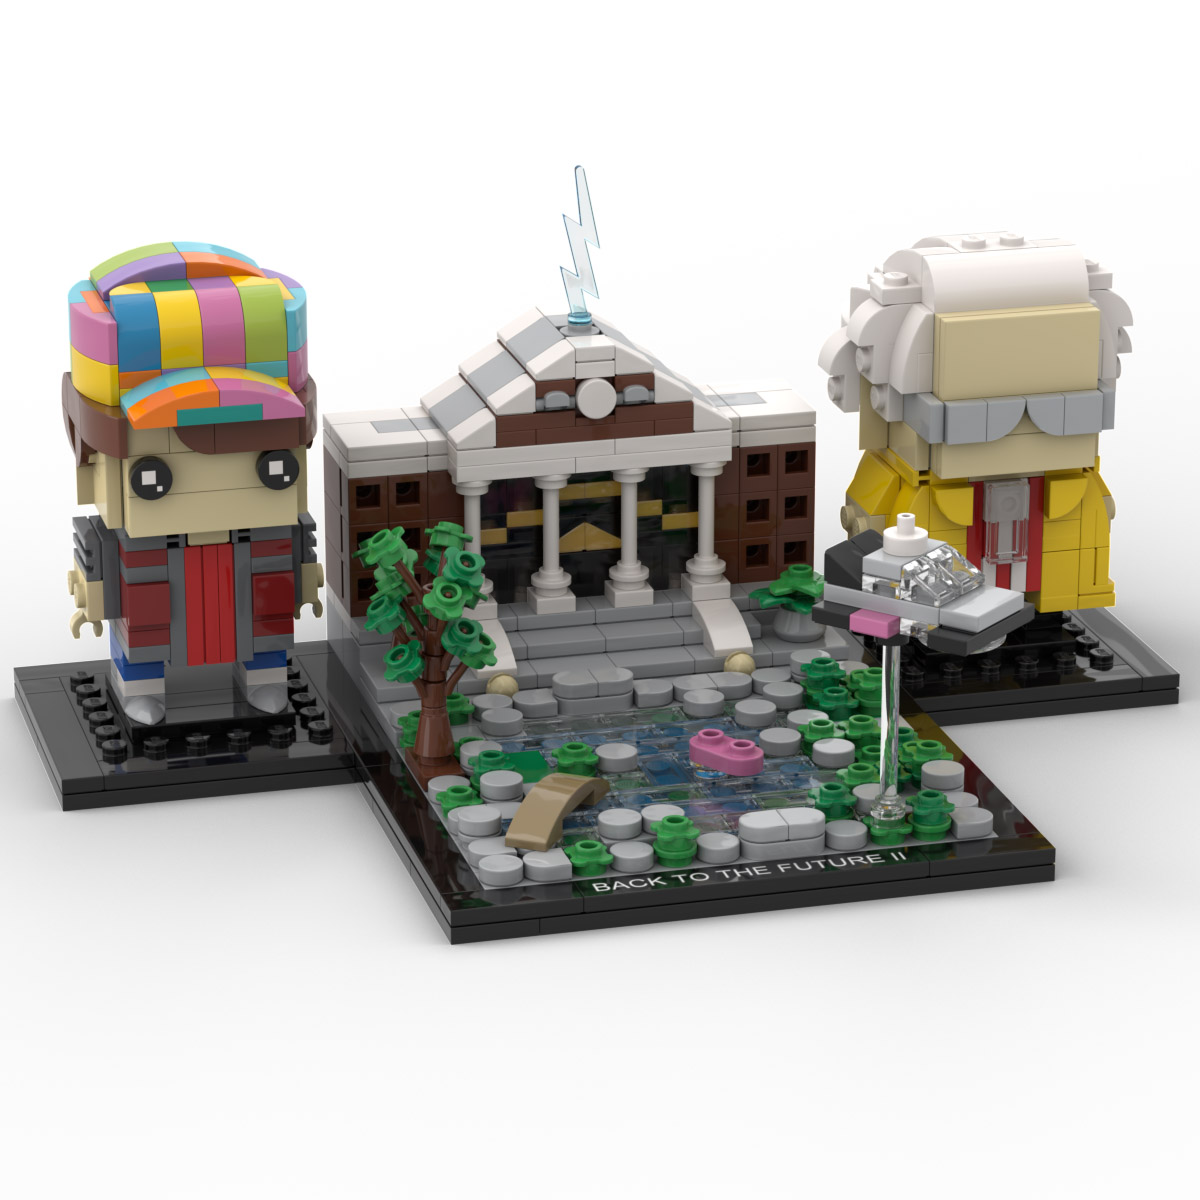 grad Autonom Latterlig Lego Back to the Future 2 Brickheadz Display Base - Custom Instructions